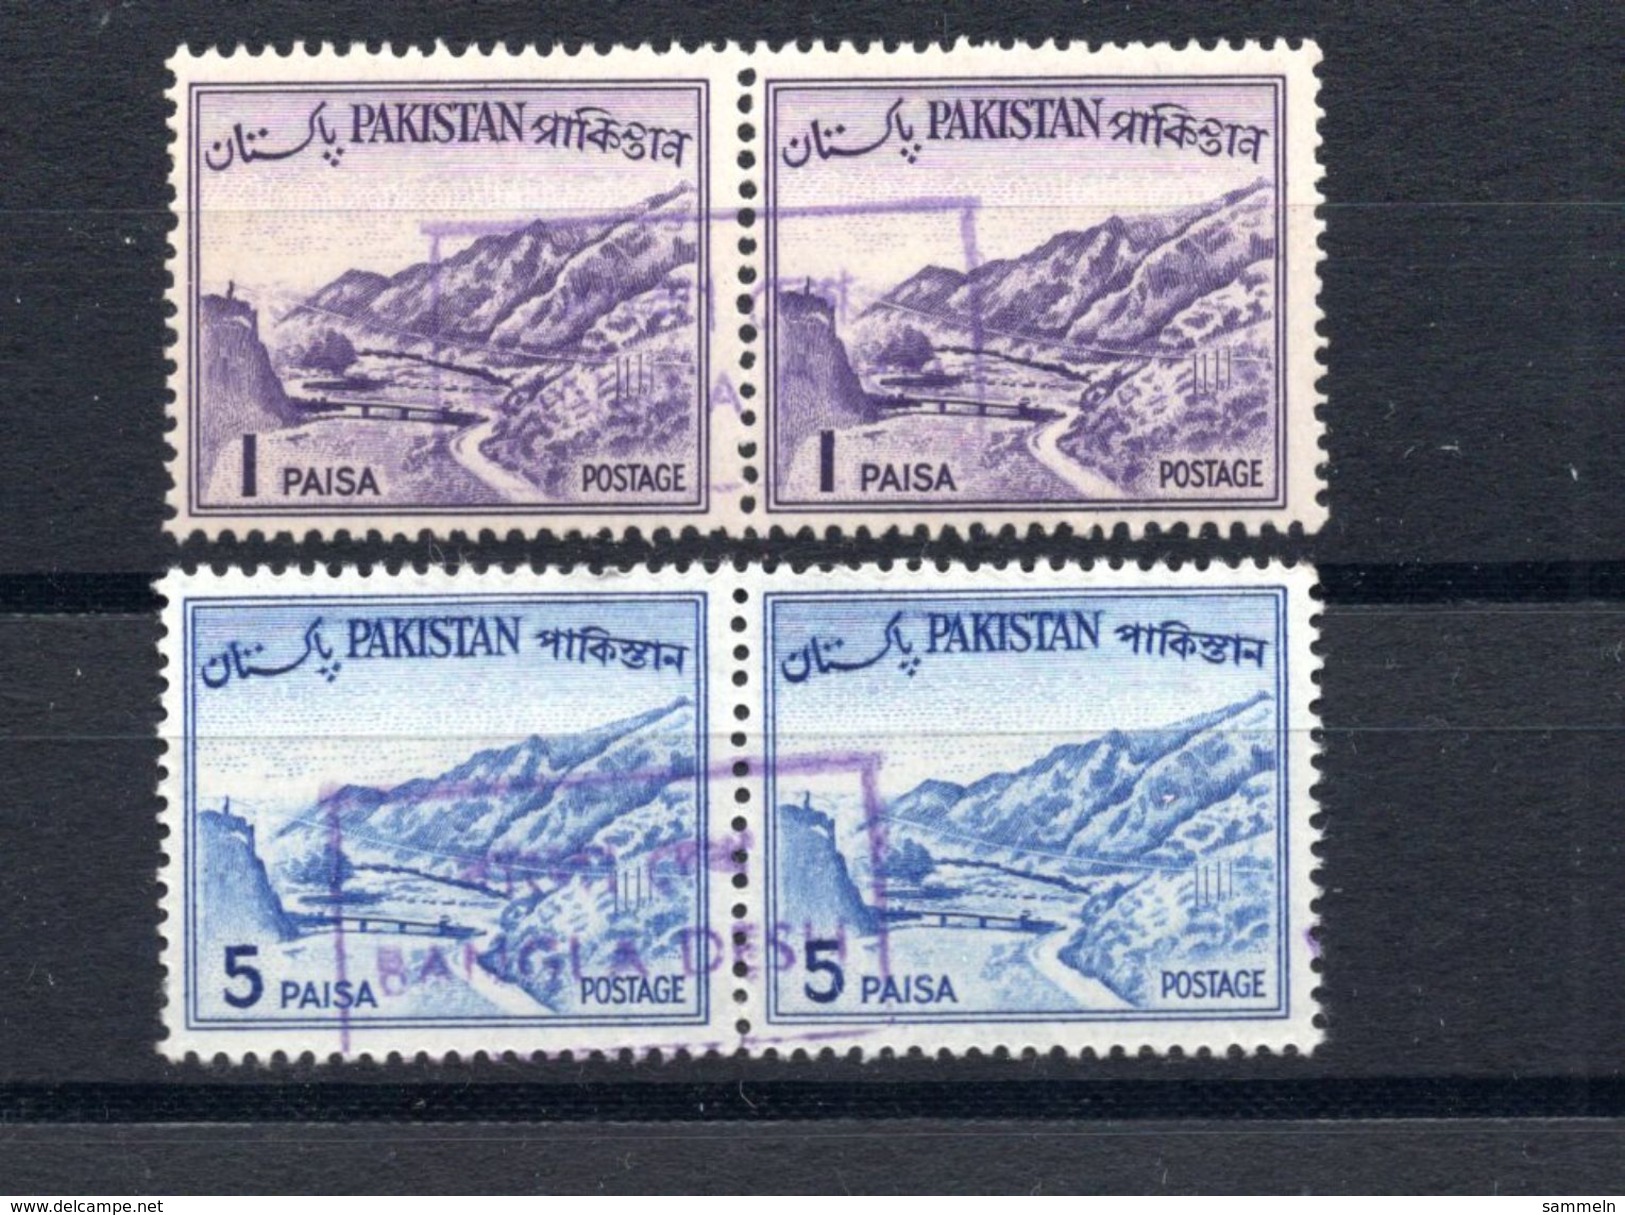 9165 Bangla Desh Überdruck Overprint Provisorien Pakistan Ca. 1971/1972 Postfrisch Mnh - Bangladesch